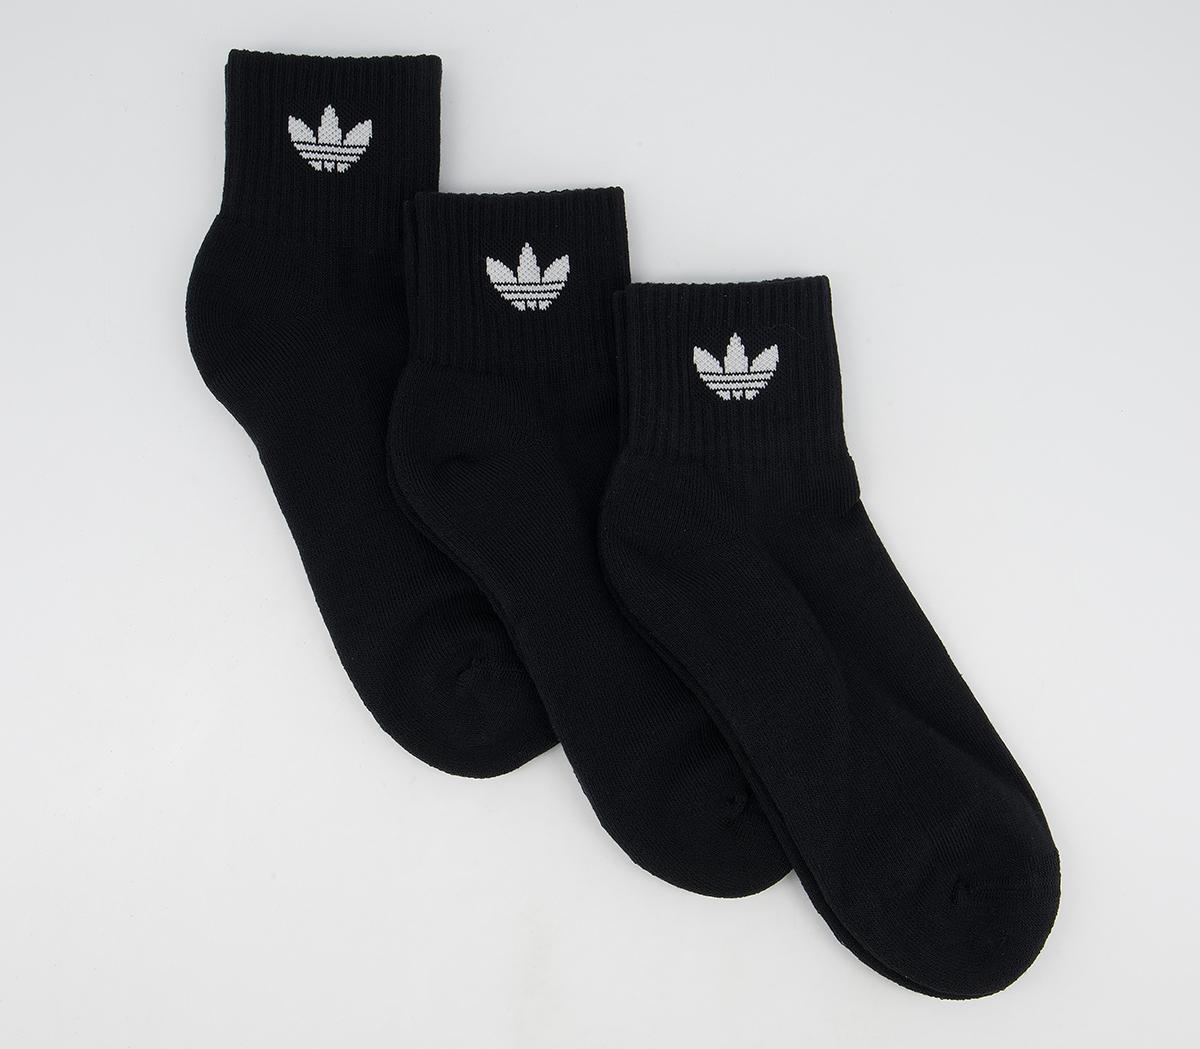 Adidas Mid Ankle Socks Black, S